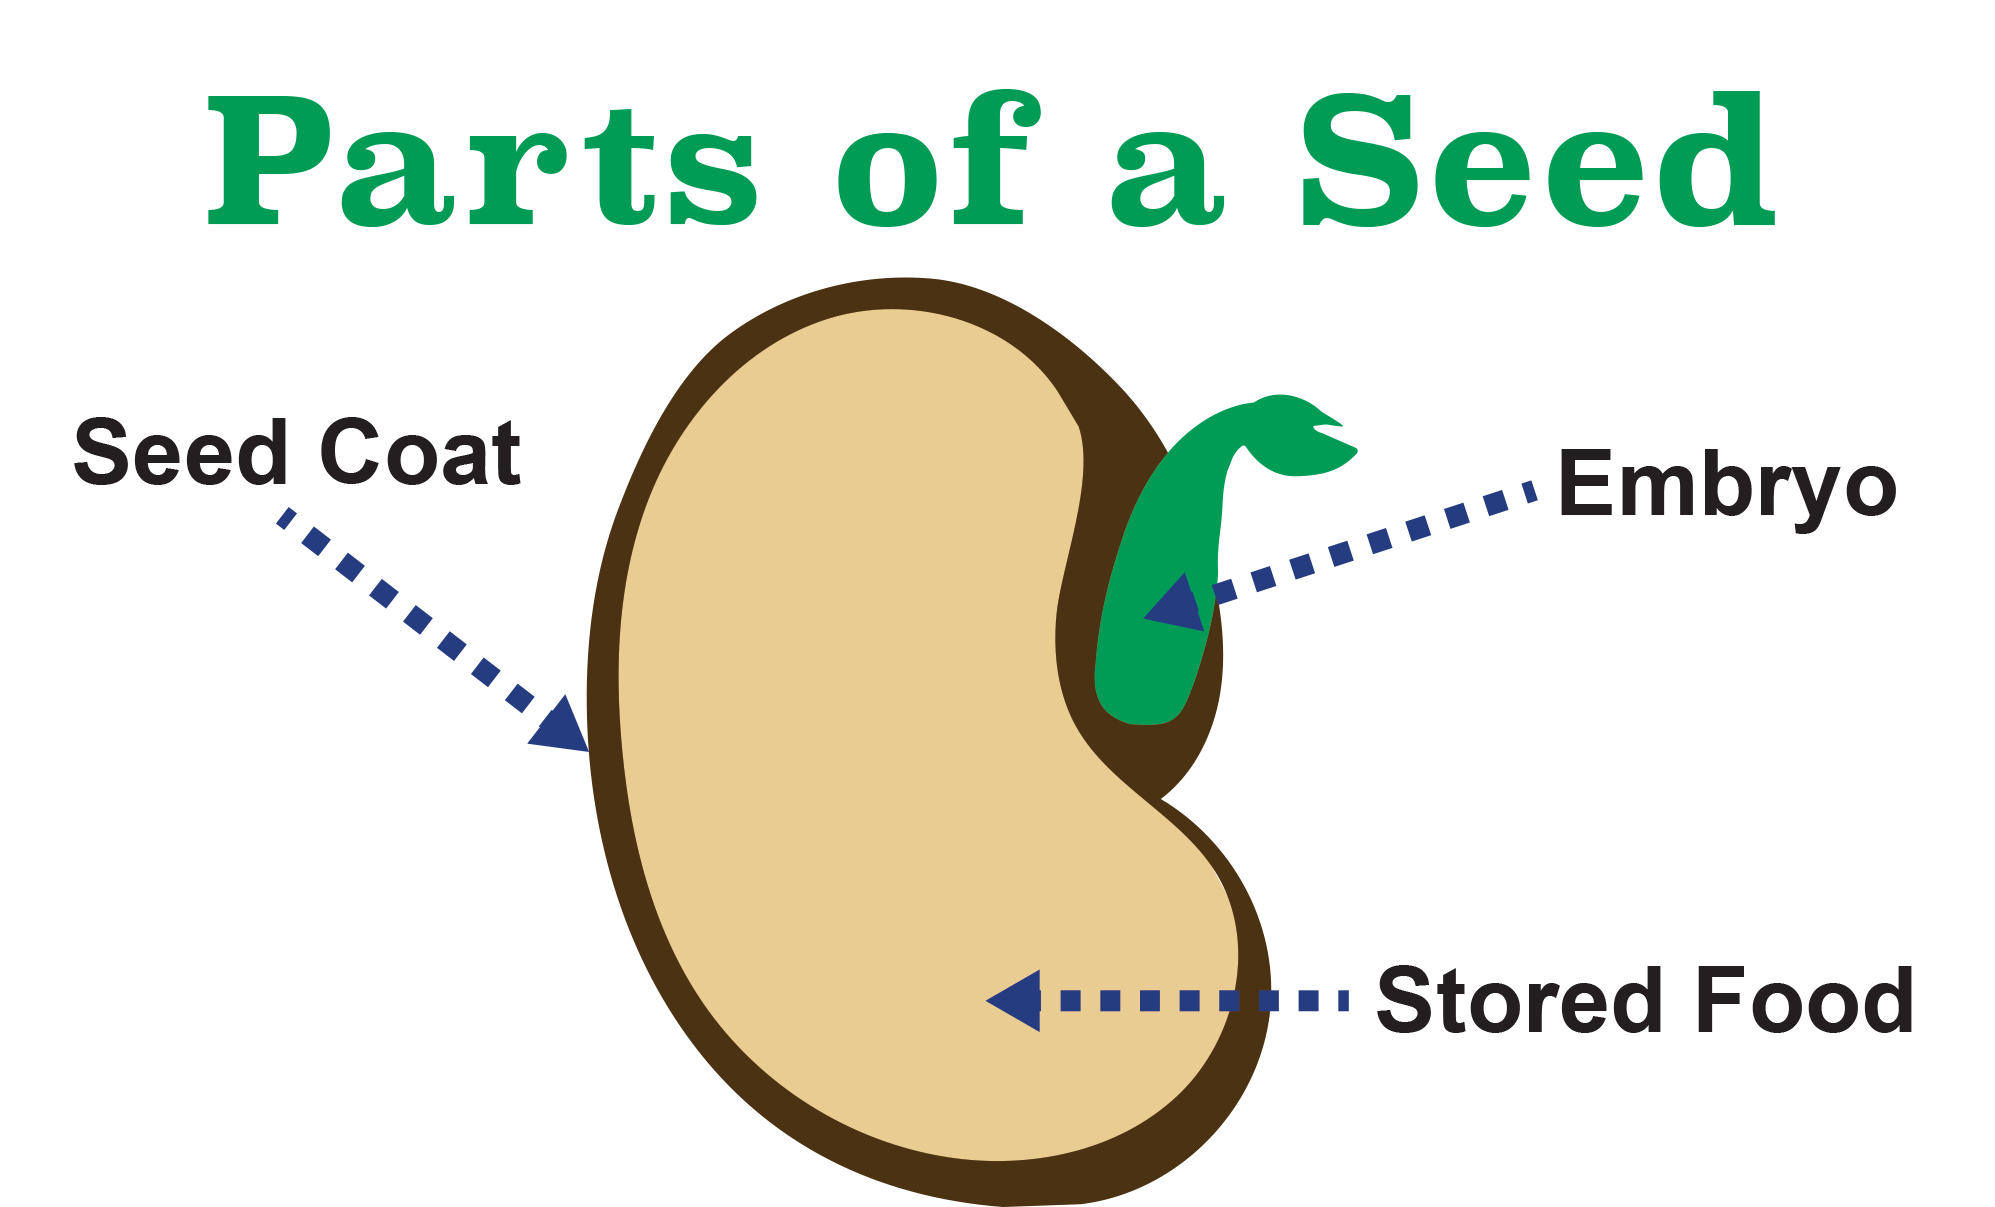 III. Types of Seed Coats